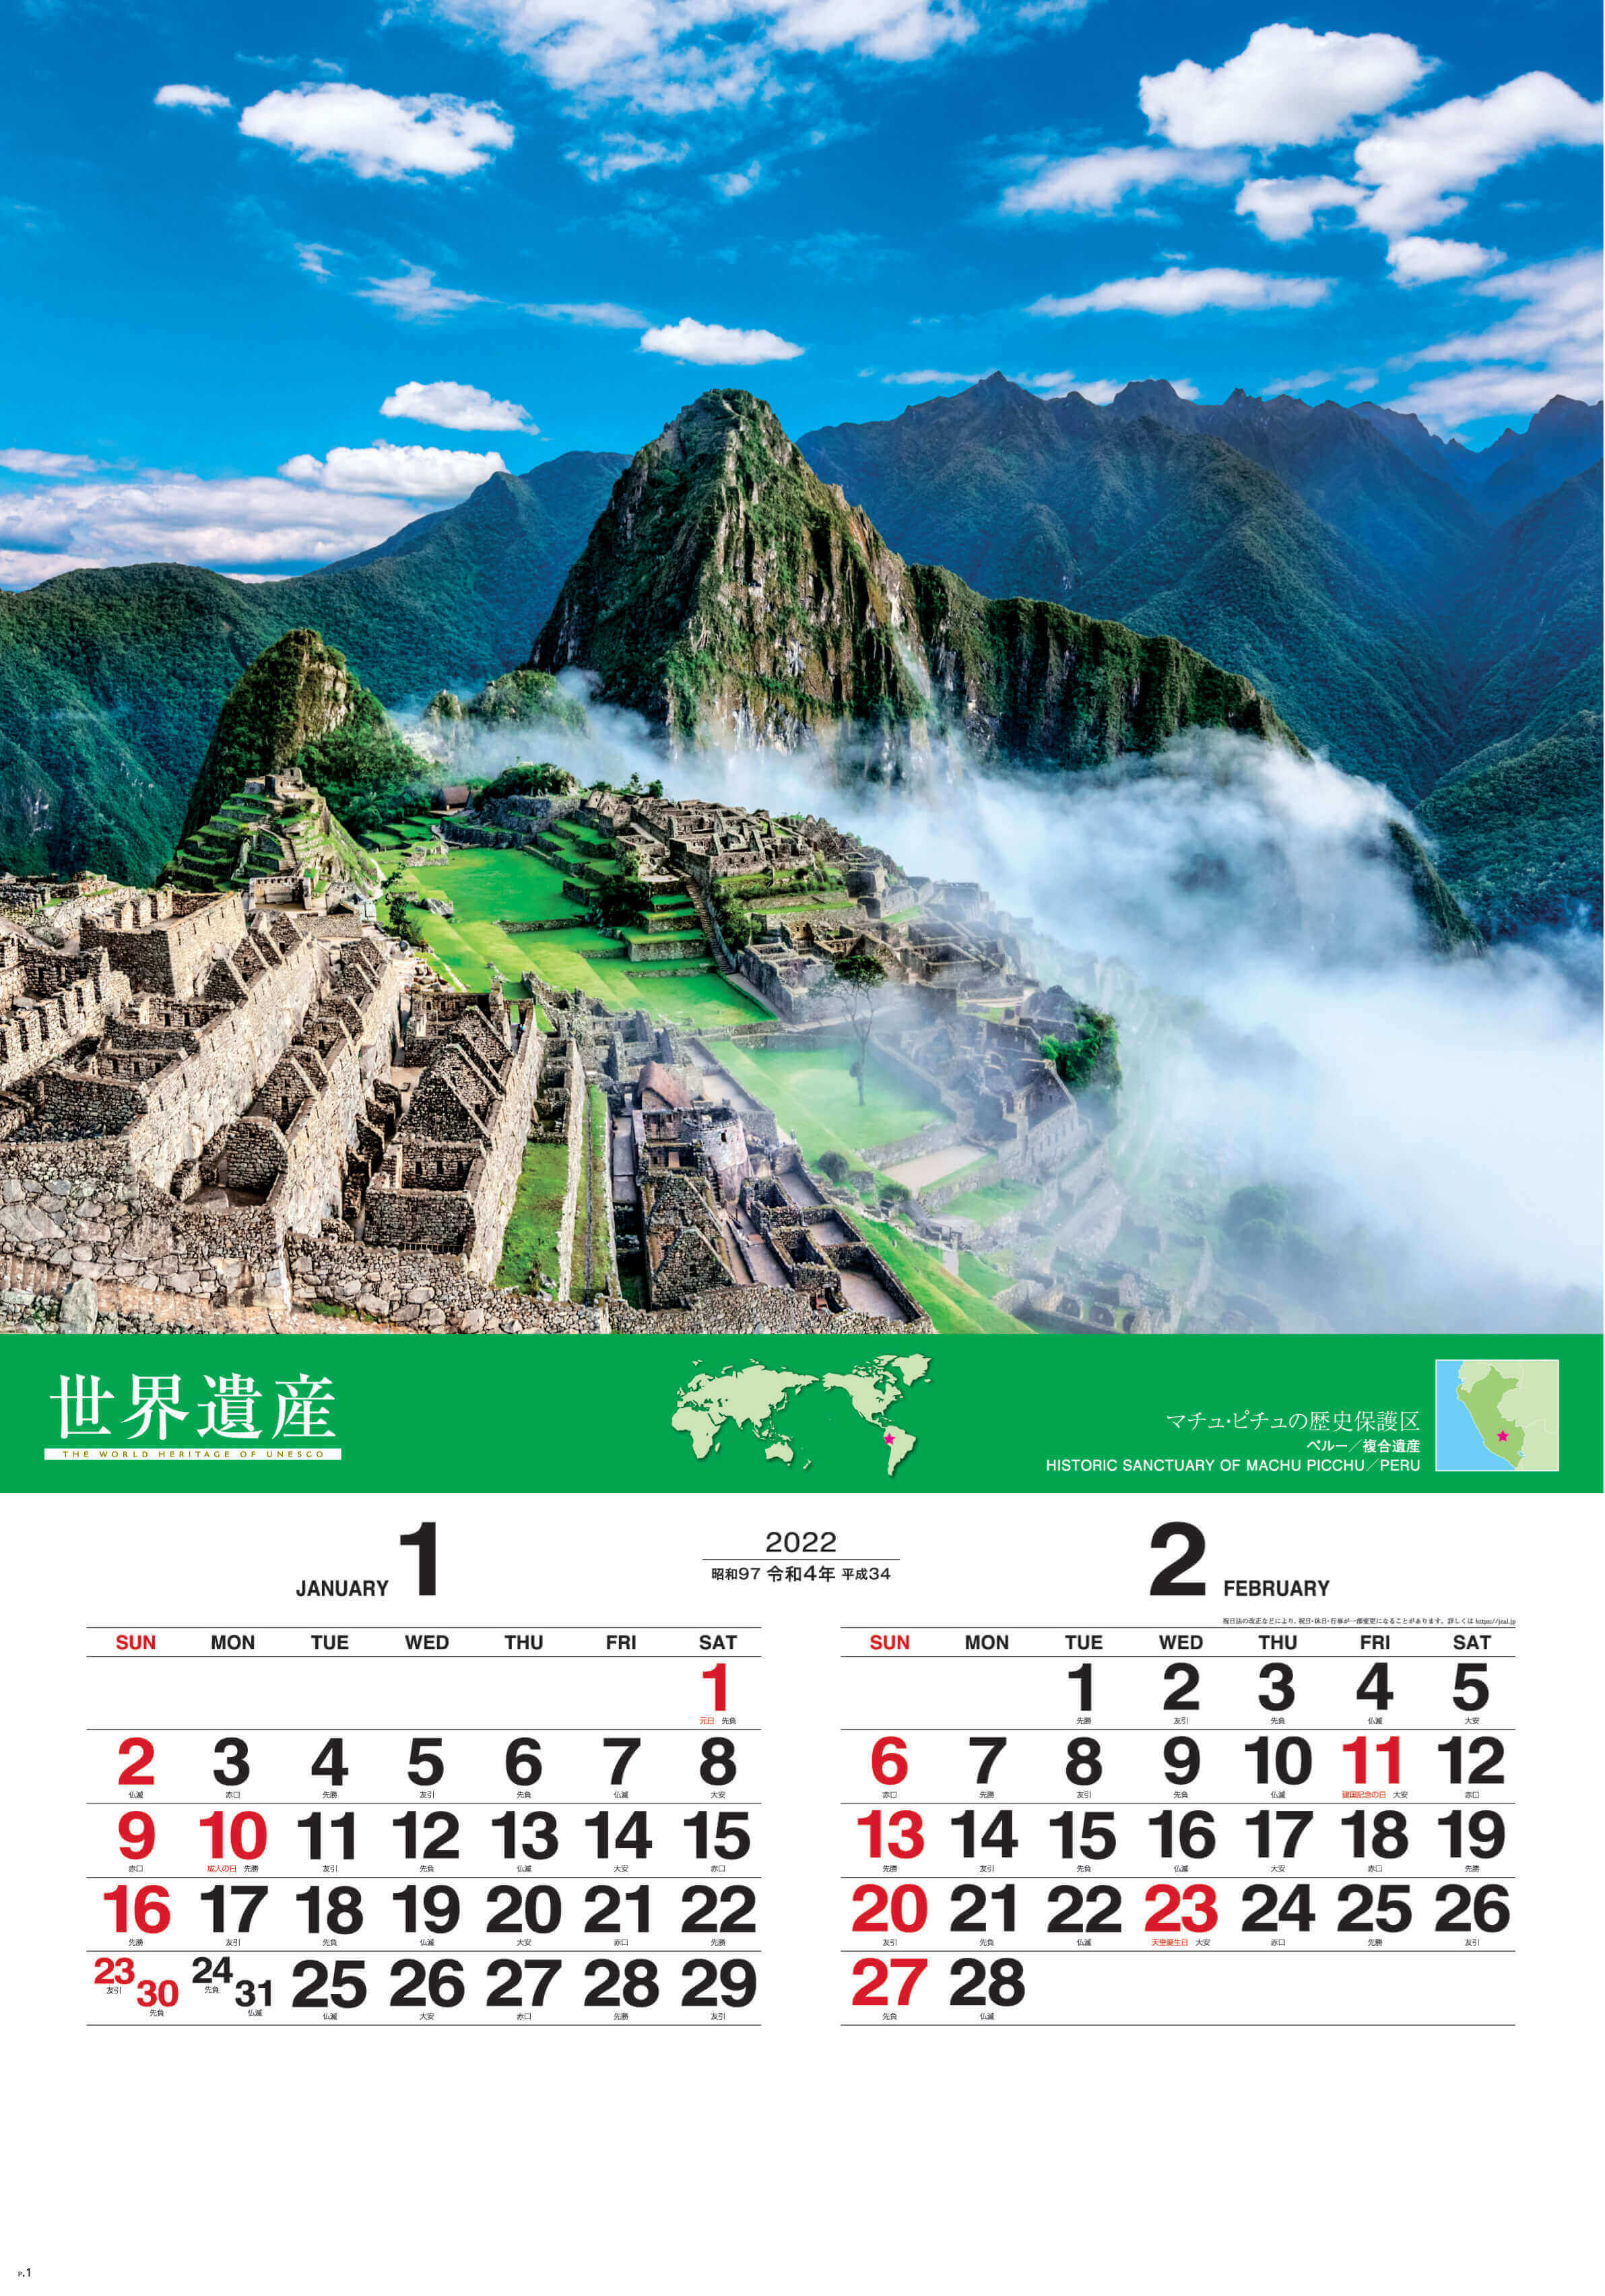 Sg 507 ユネスコ世界遺産 フィルムカレンダー 22年カレンダー 世界の自然や遺跡を厳選したカレンダー